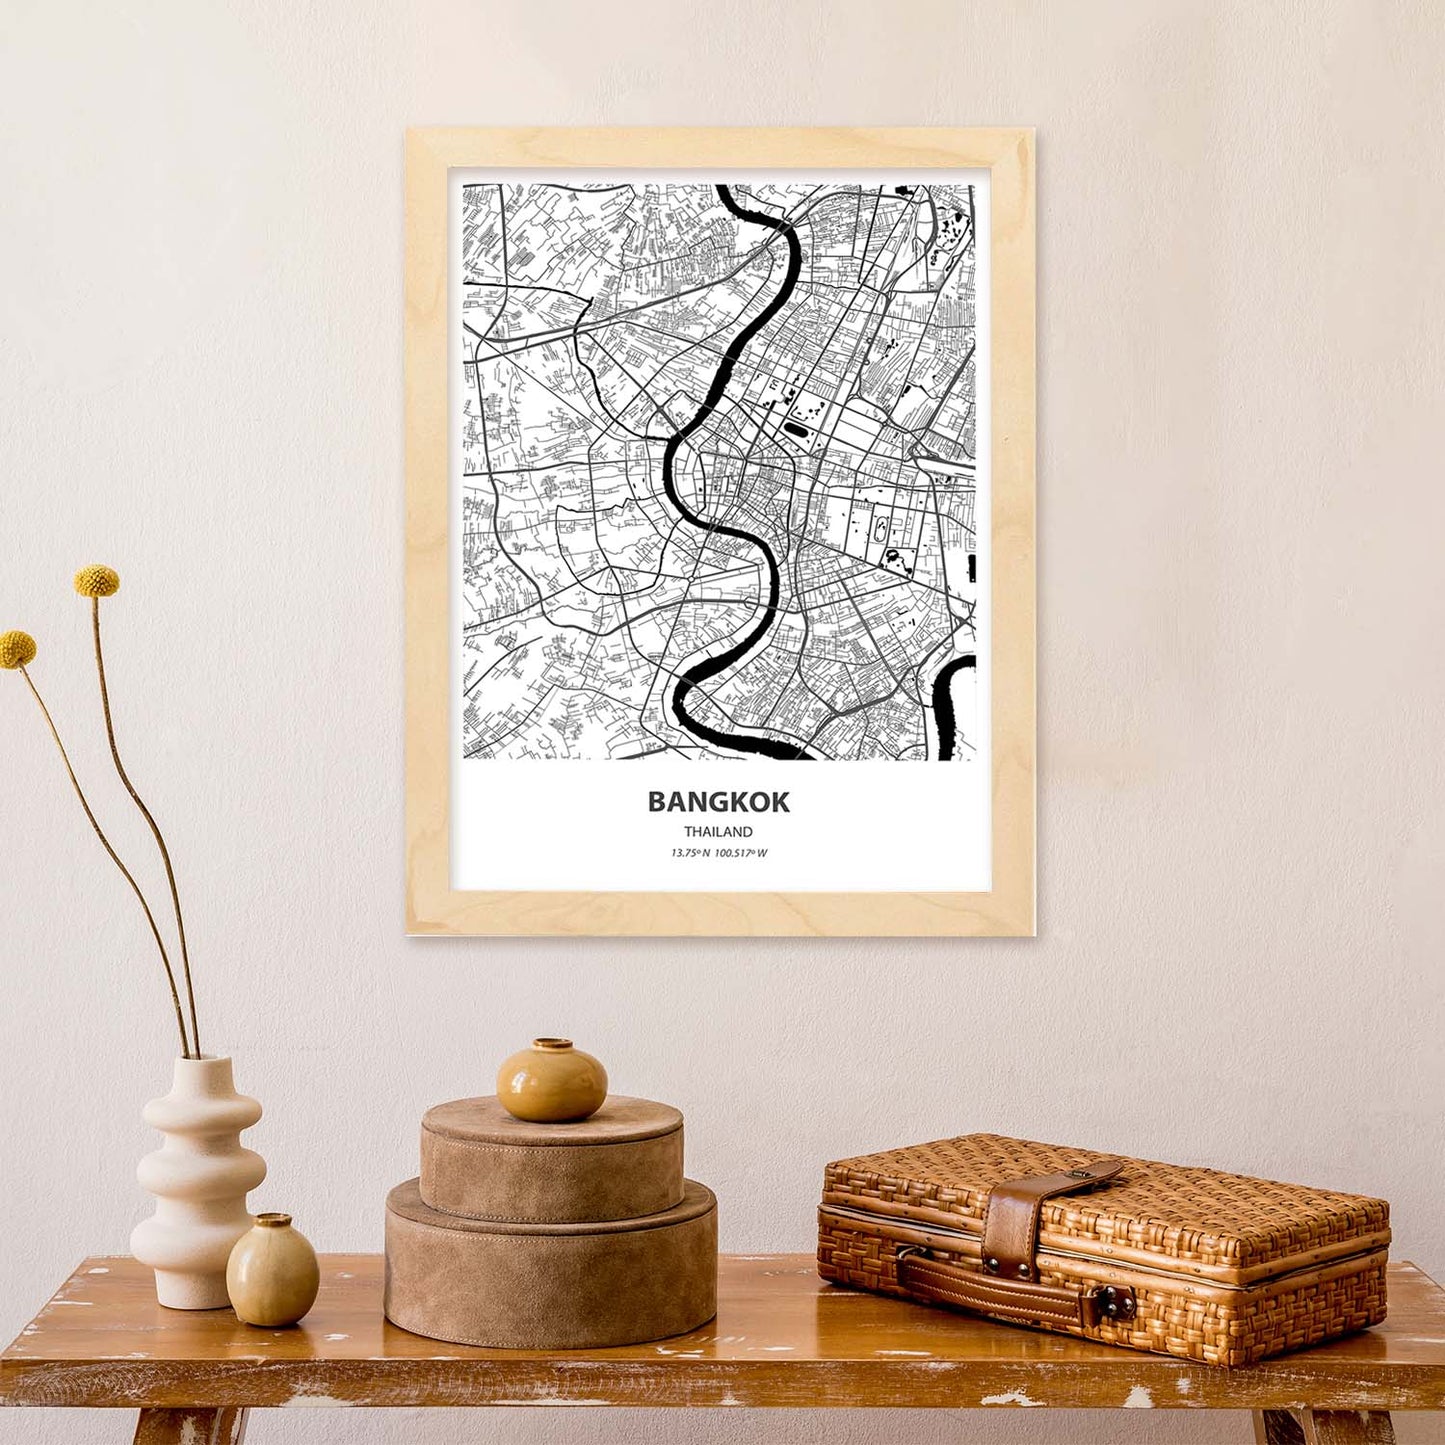 Poster con mapa de Bangkok - Tailandia. Láminas de ciudades de Asia con mares y ríos en color negro.-Artwork-Nacnic-Nacnic Estudio SL